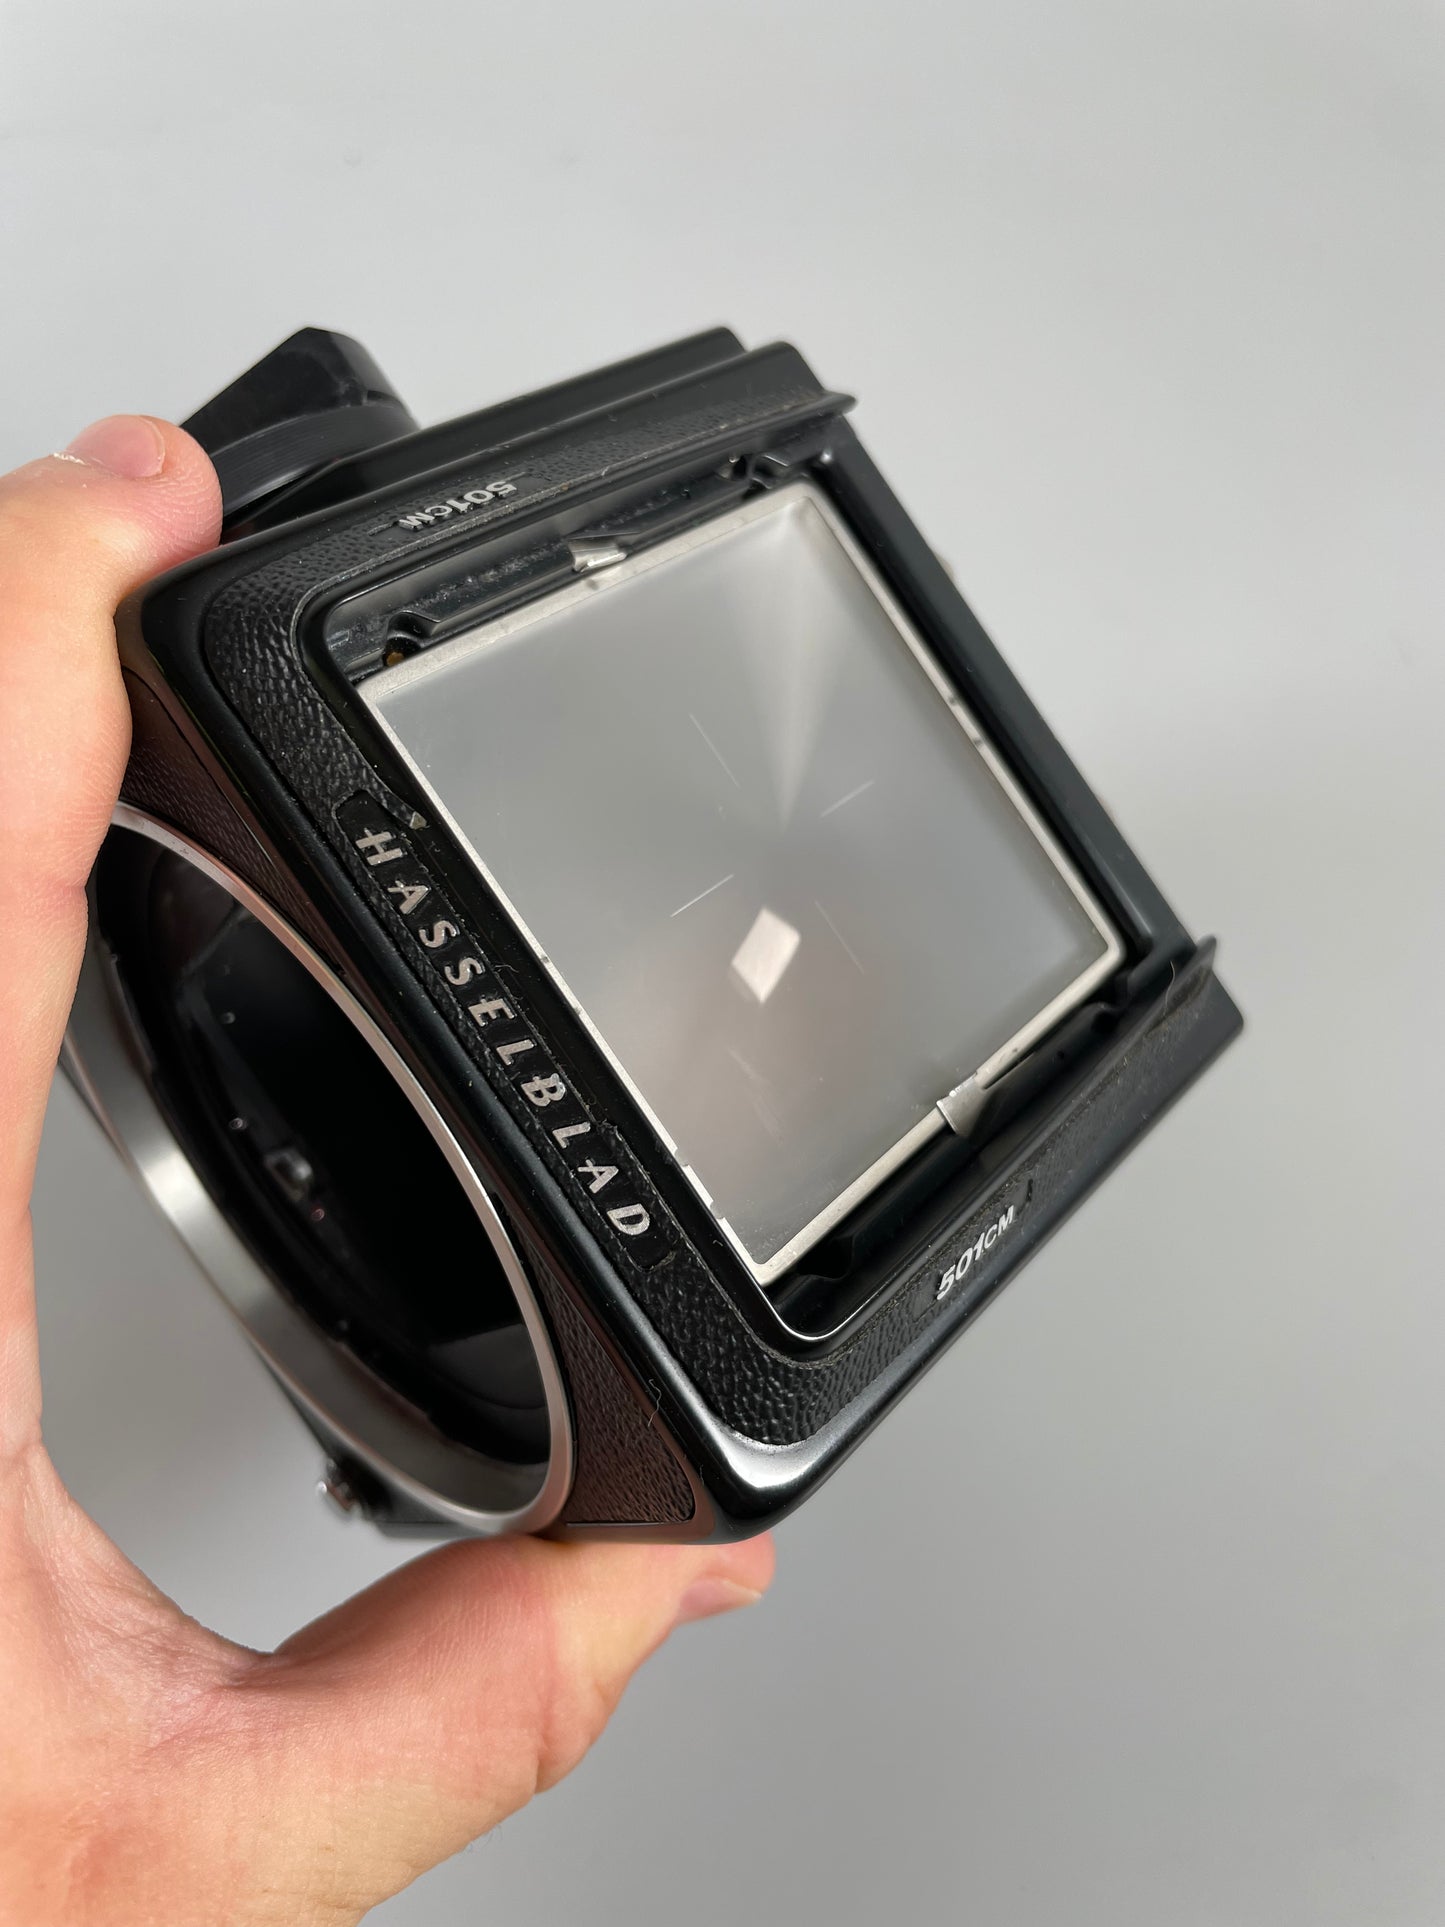 Hasselblad 501CM Medium Format Film Camera Body black acute matte focusing screen